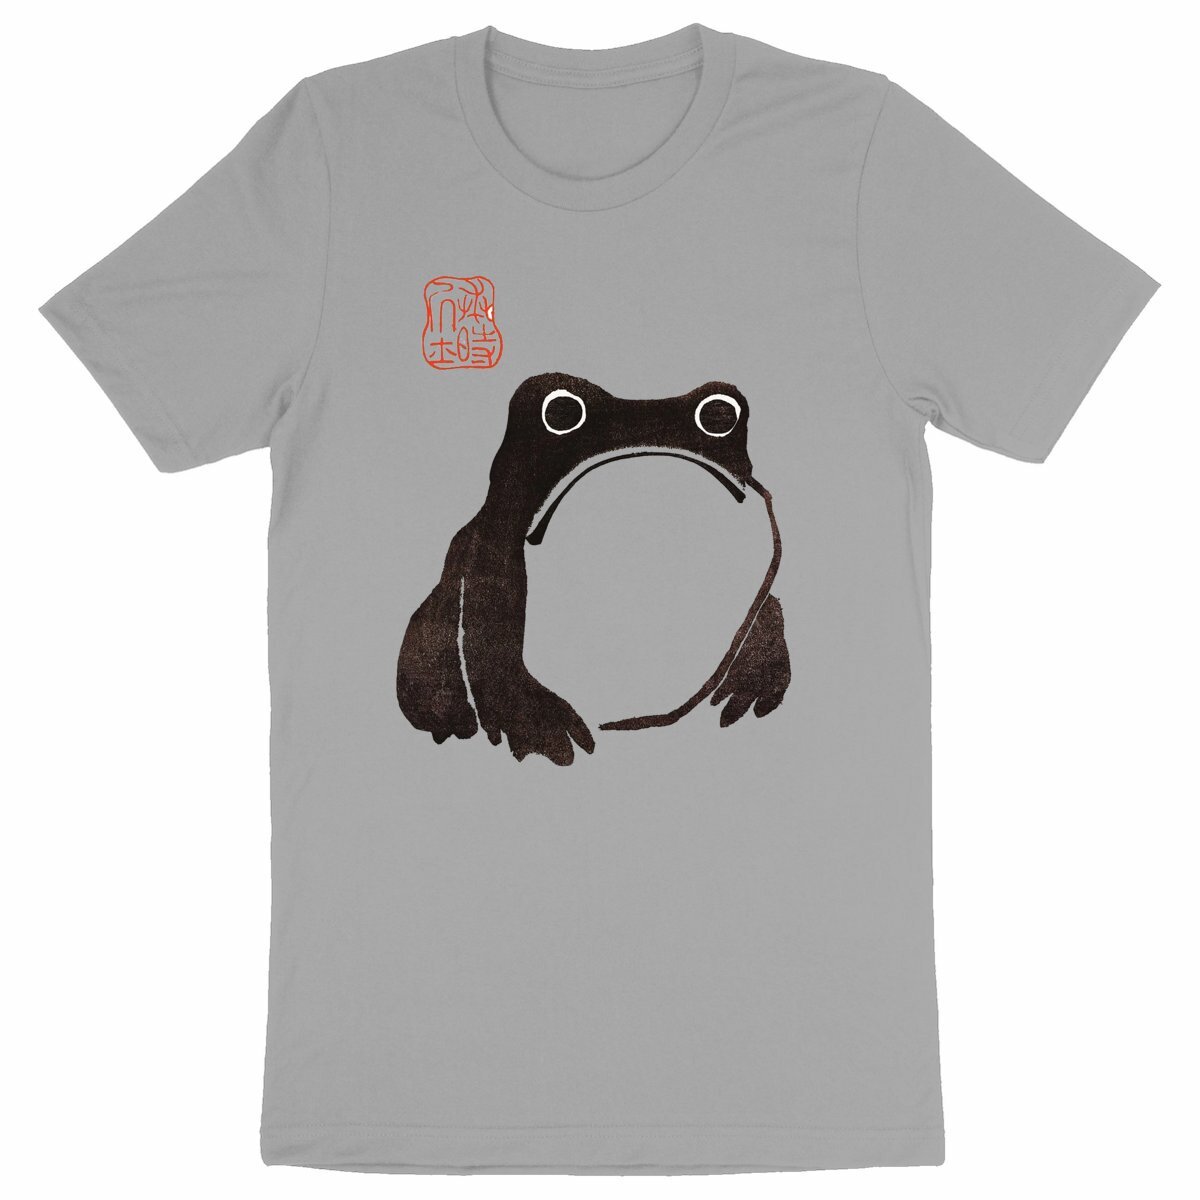  Frog from Meika Gafu, 1814 - Organic Cotton T-Shirt